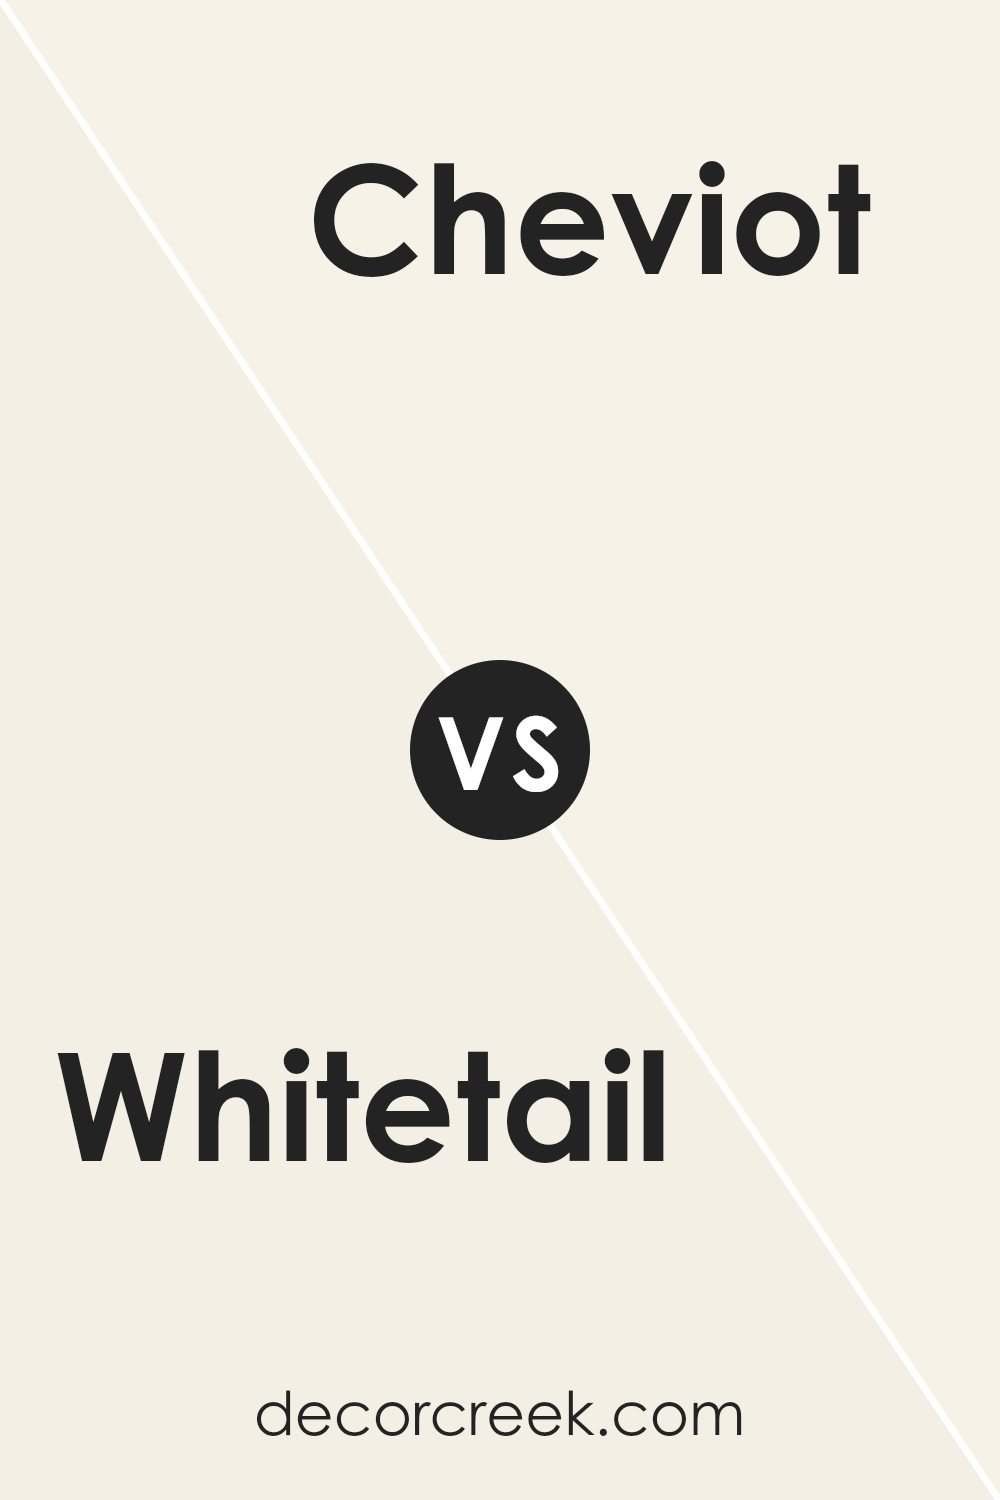 whitetail_sw_7103_vs_cheviot_sw_9503